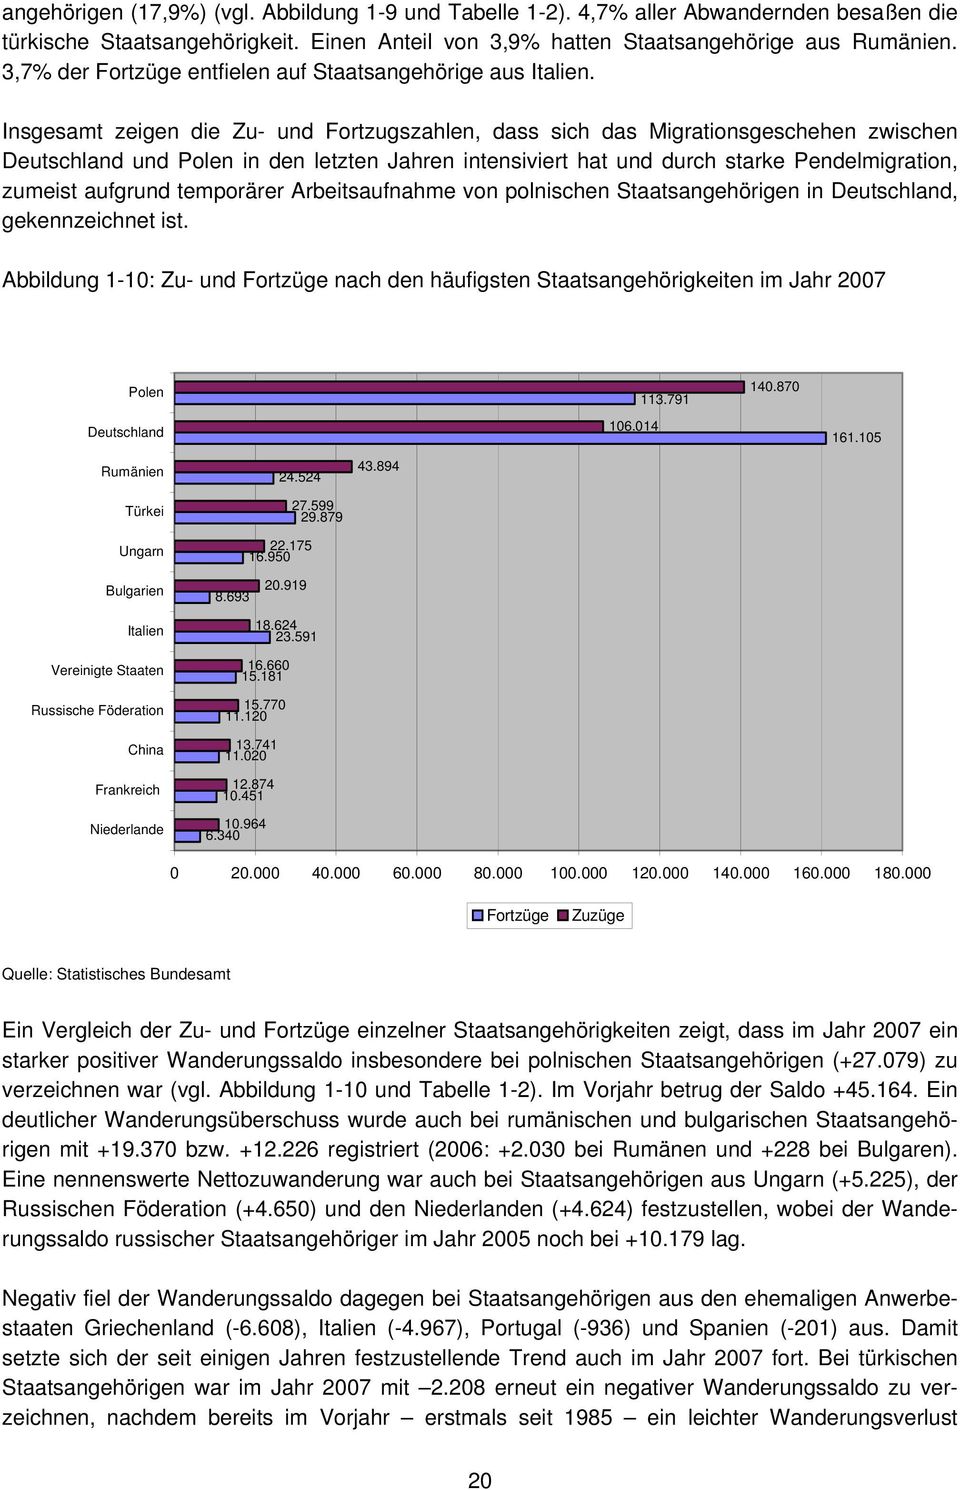 Insgesamt zeigen die Zu- und Fortzugszahlen, dass sich das Migrationsgeschehen zwischen Deutschland und Polen in den letzten Jahren intensiviert hat und durch starke Pendelmigration, zumeist aufgrund